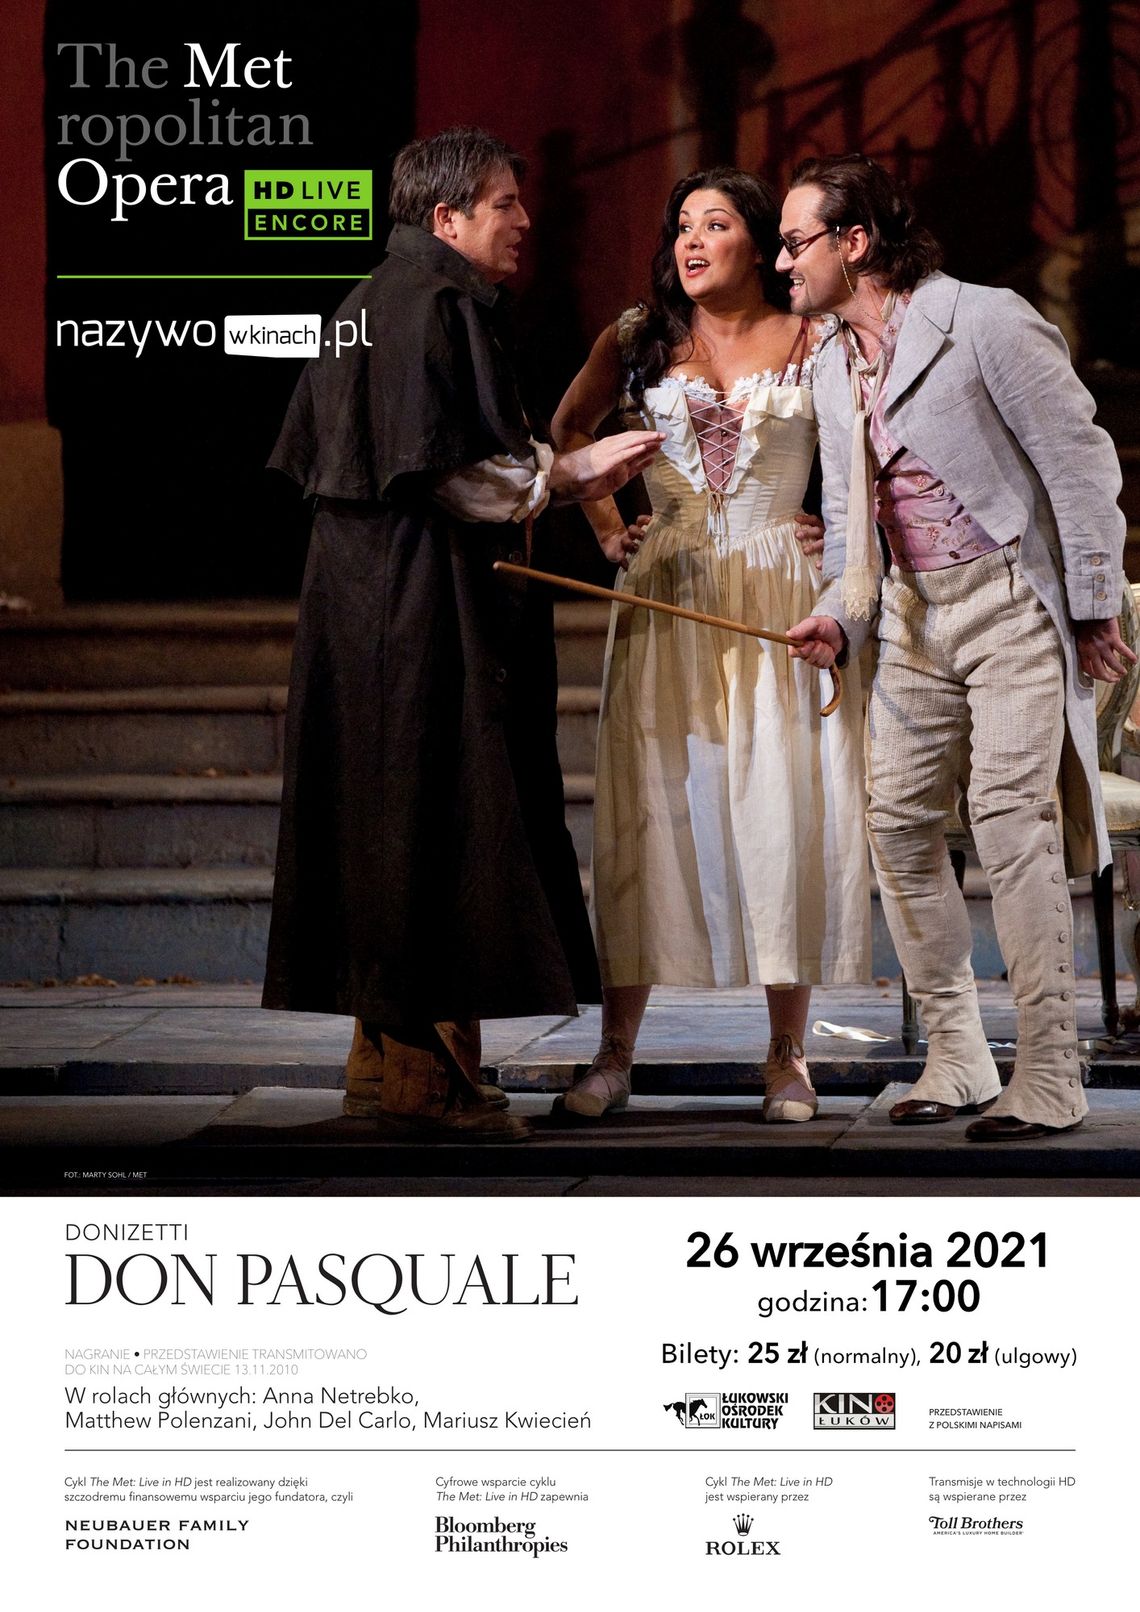 The Metropolitan Opera: Live in HD część 1. DON PASQUALE